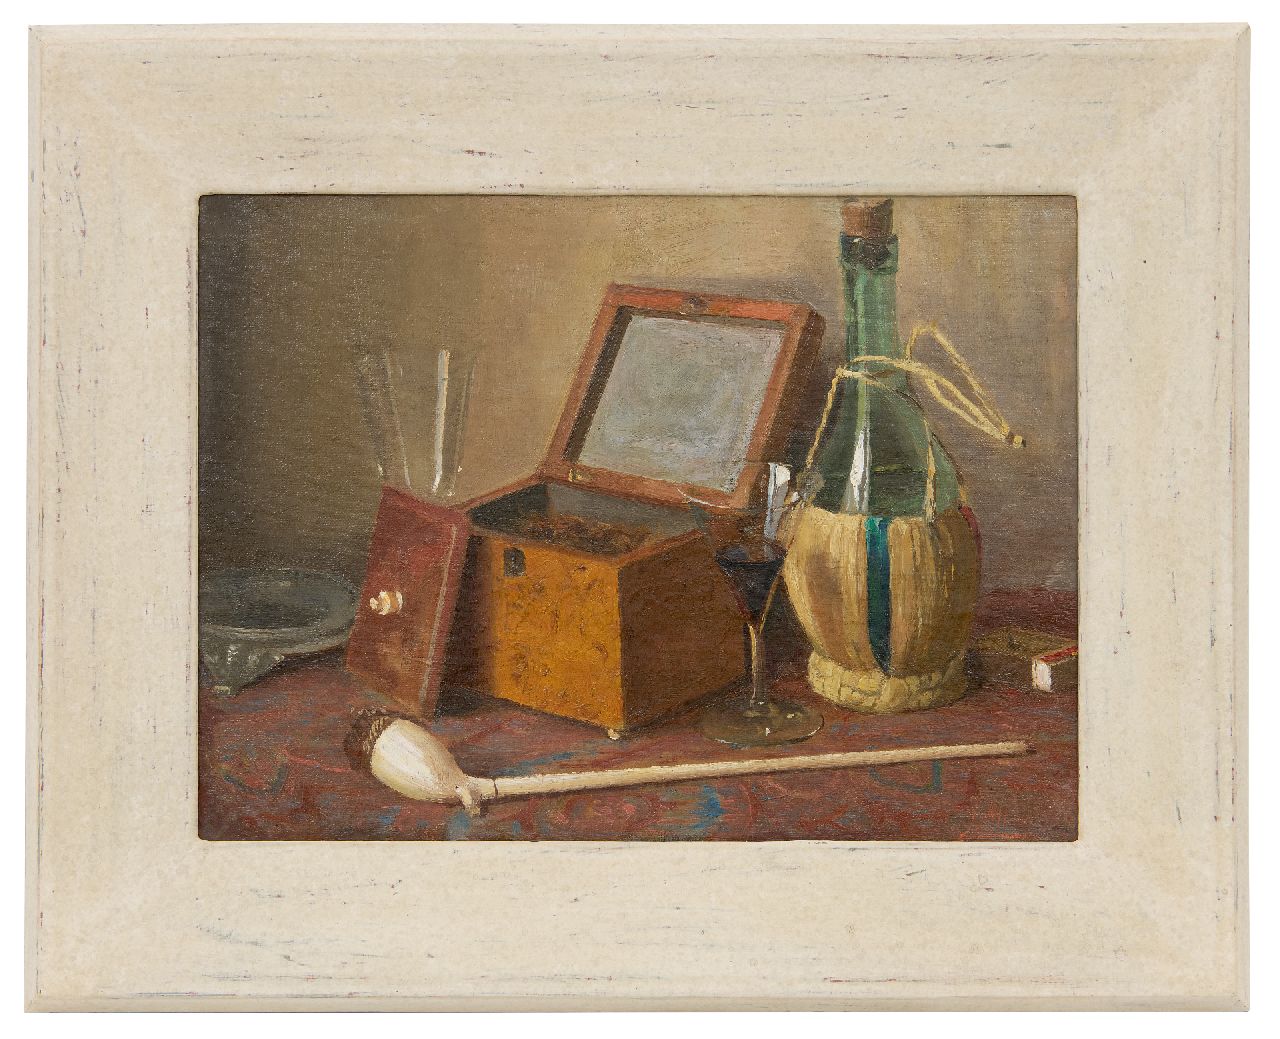 Altink J.  | Jan Altink | Schilderijen te koop aangeboden | Stilleven van Altinks tabakskistje, pijp en wijnfles, olieverf op doek 30,3 x 40,3 cm, gesigneerd rechtsonder